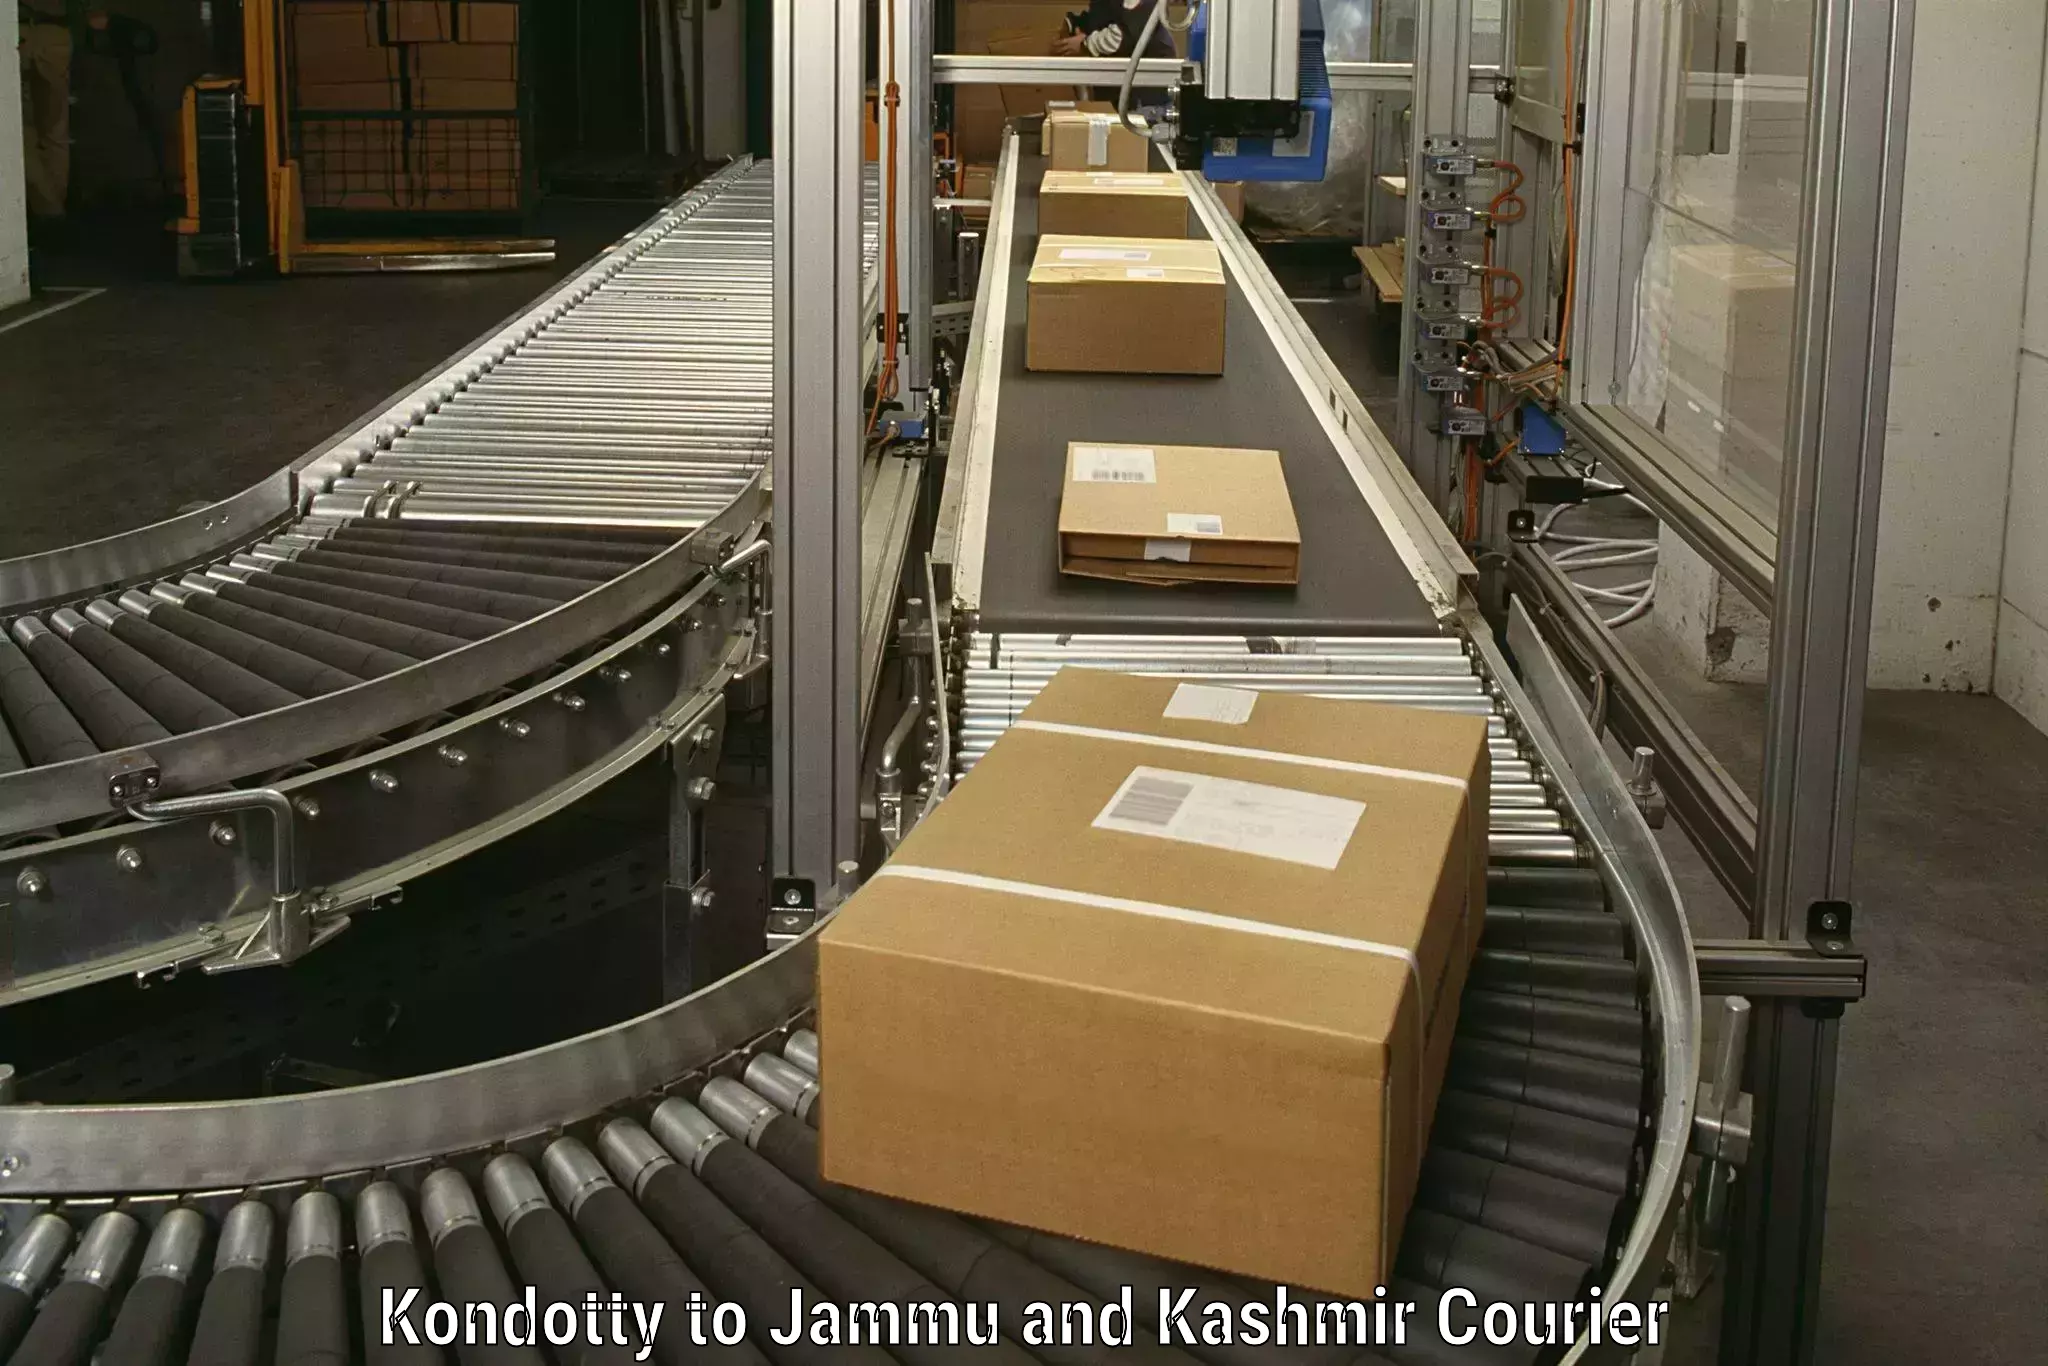 Professional moving company Kondotty to University of Jammu